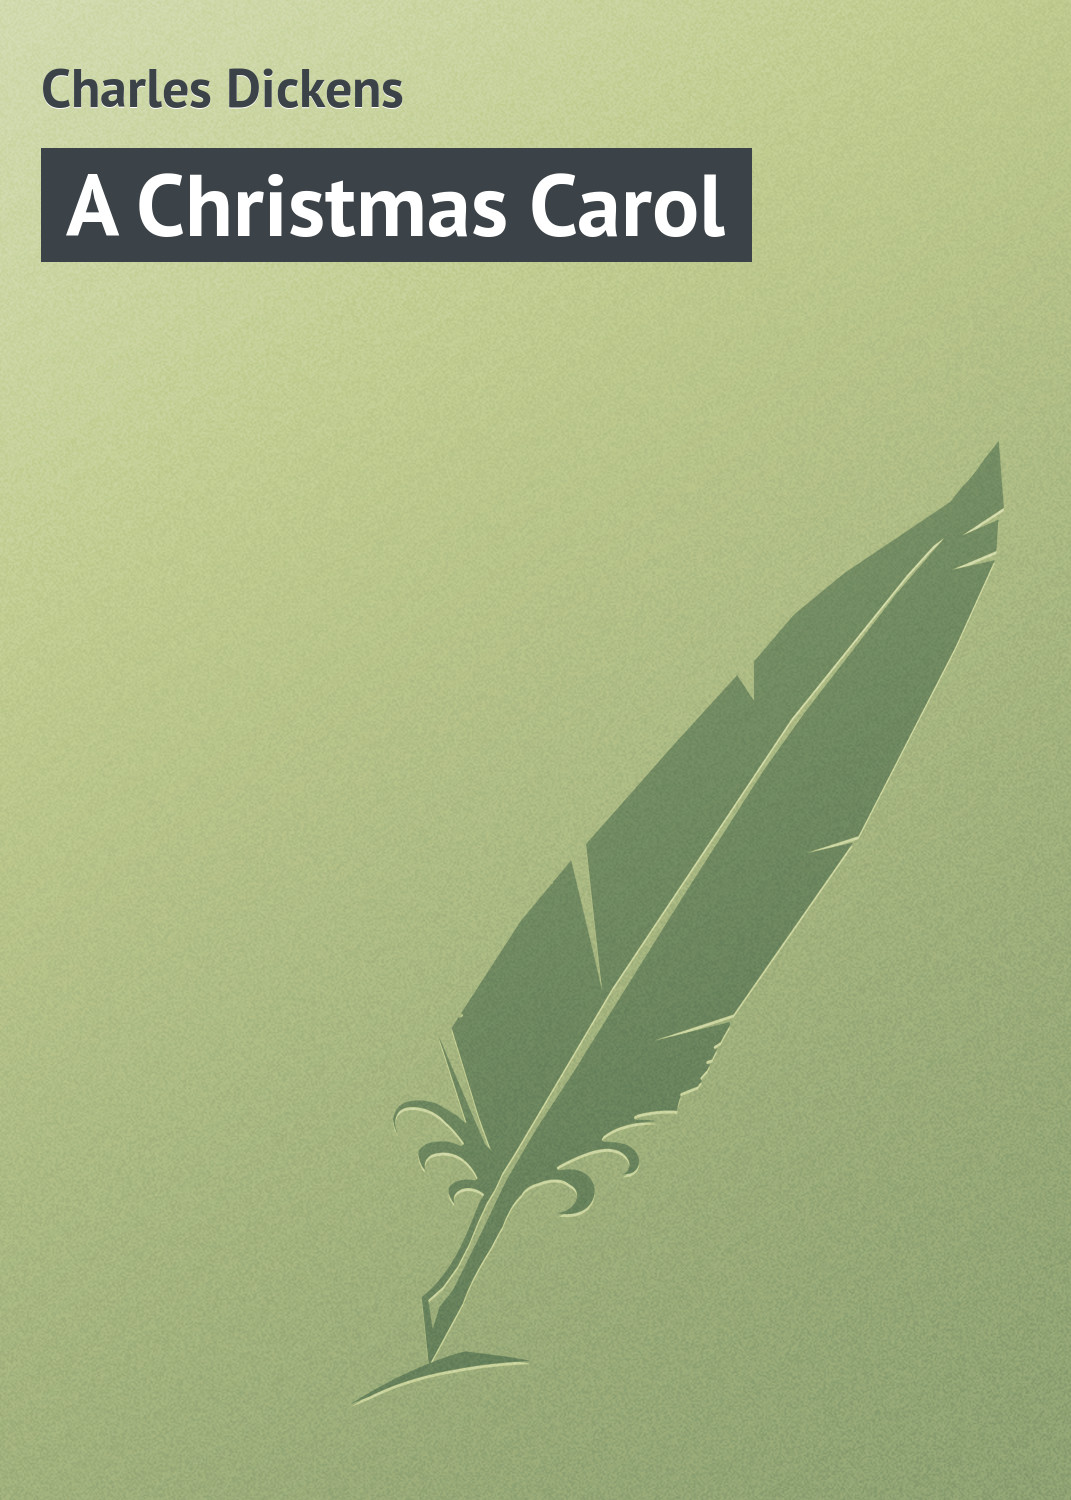 Книга A Christmas Carol из серии , созданная Charles Dickens, может относится к жанру Зарубежная старинная литература, Зарубежная классика. Стоимость электронной книги A Christmas Carol с идентификатором 21103318 составляет 5.99 руб.